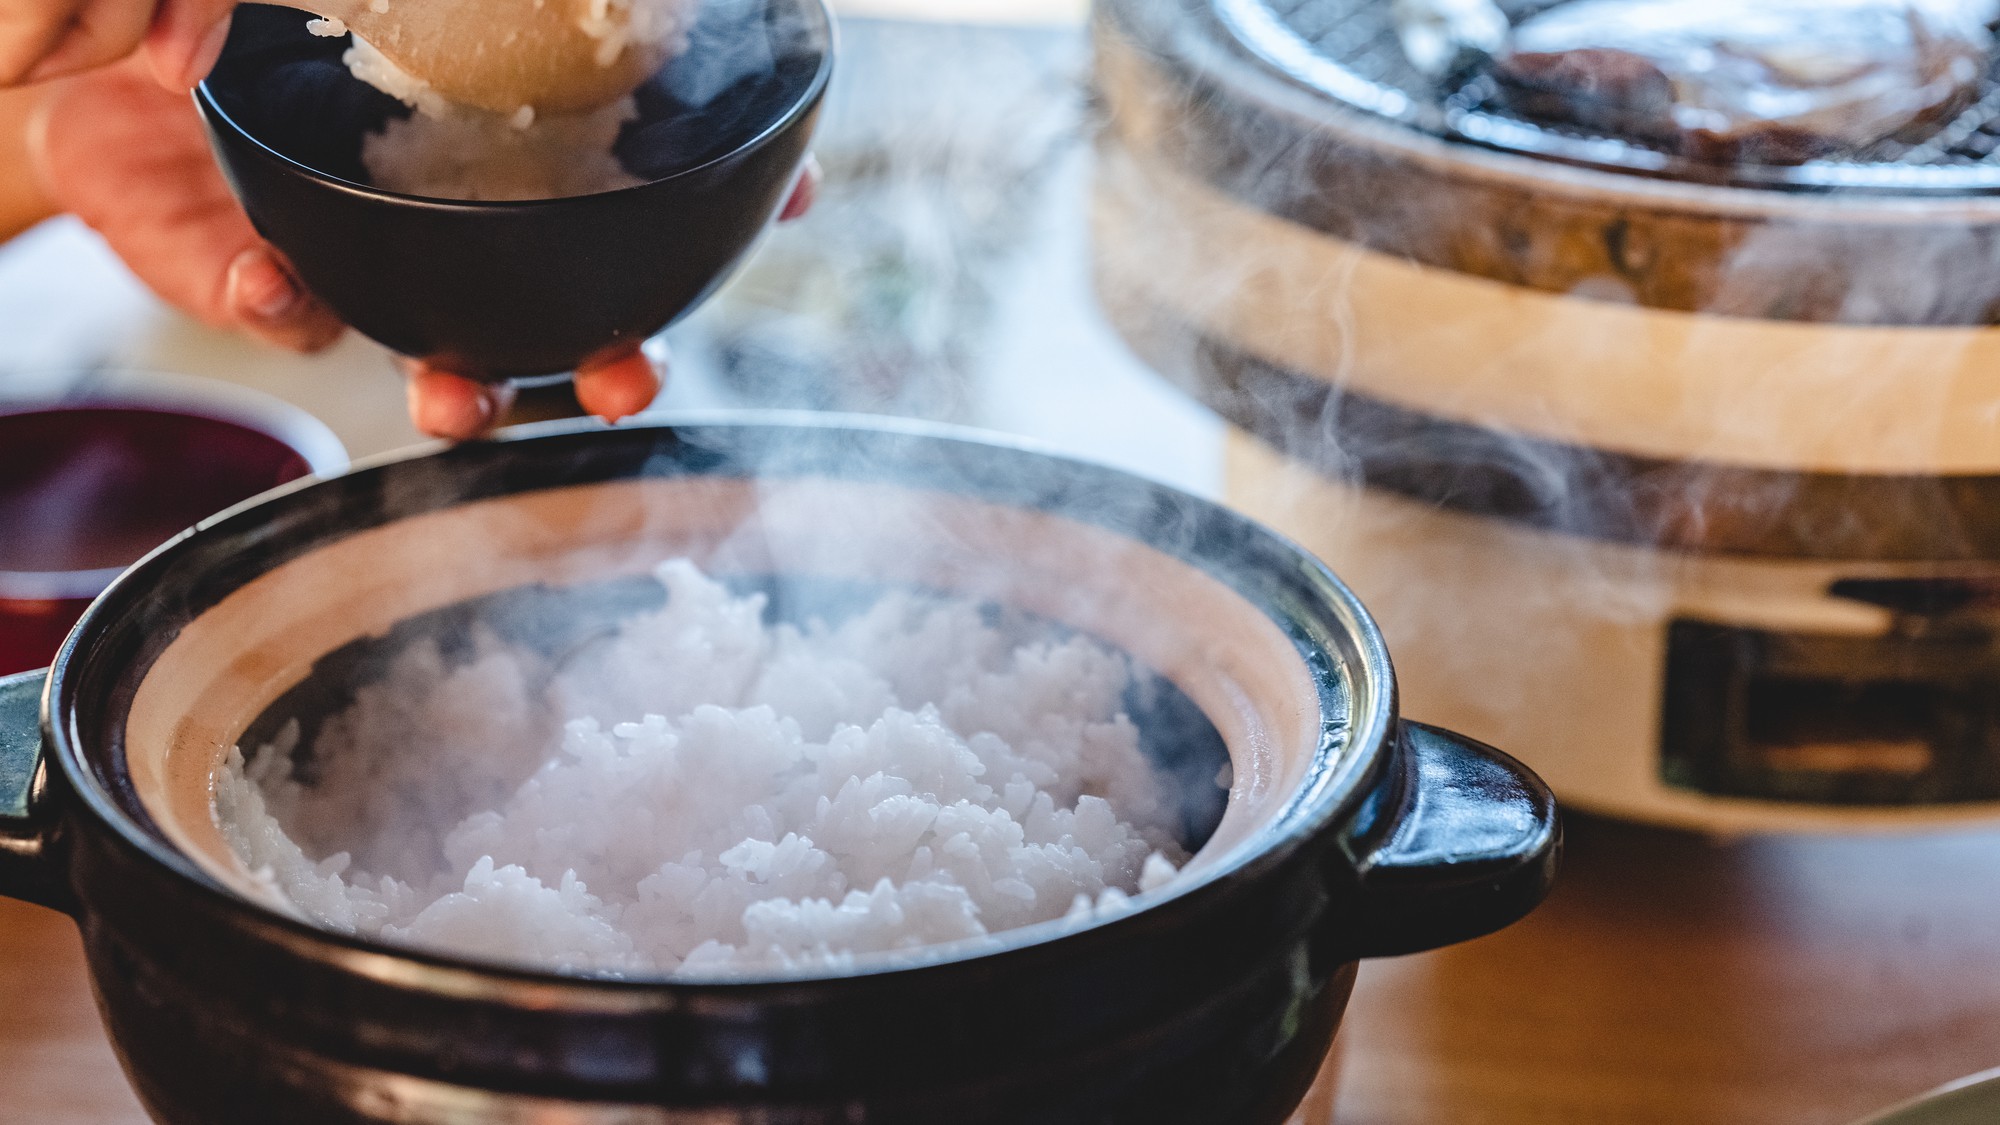 ご飯は土鍋で炊いた小浜のお米をご用意します。